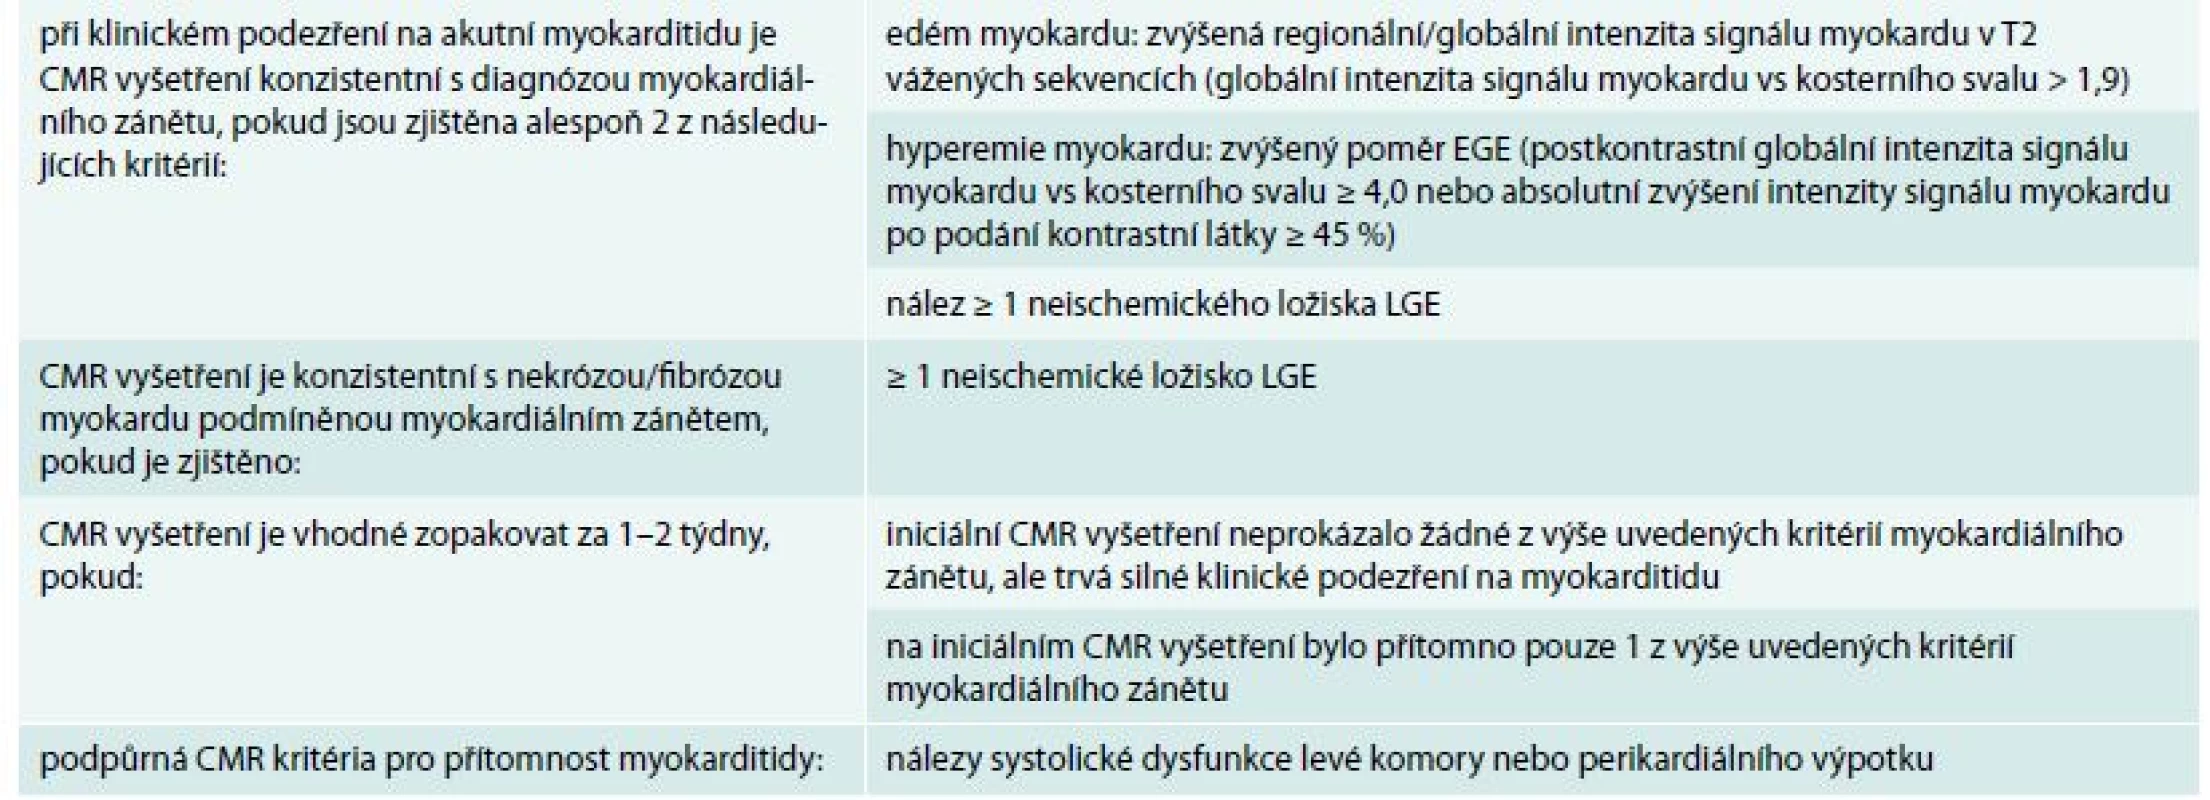 Lake Louise kritéria pro CMR diagnostiku akutní myokarditidy. Upraveno podle [31]